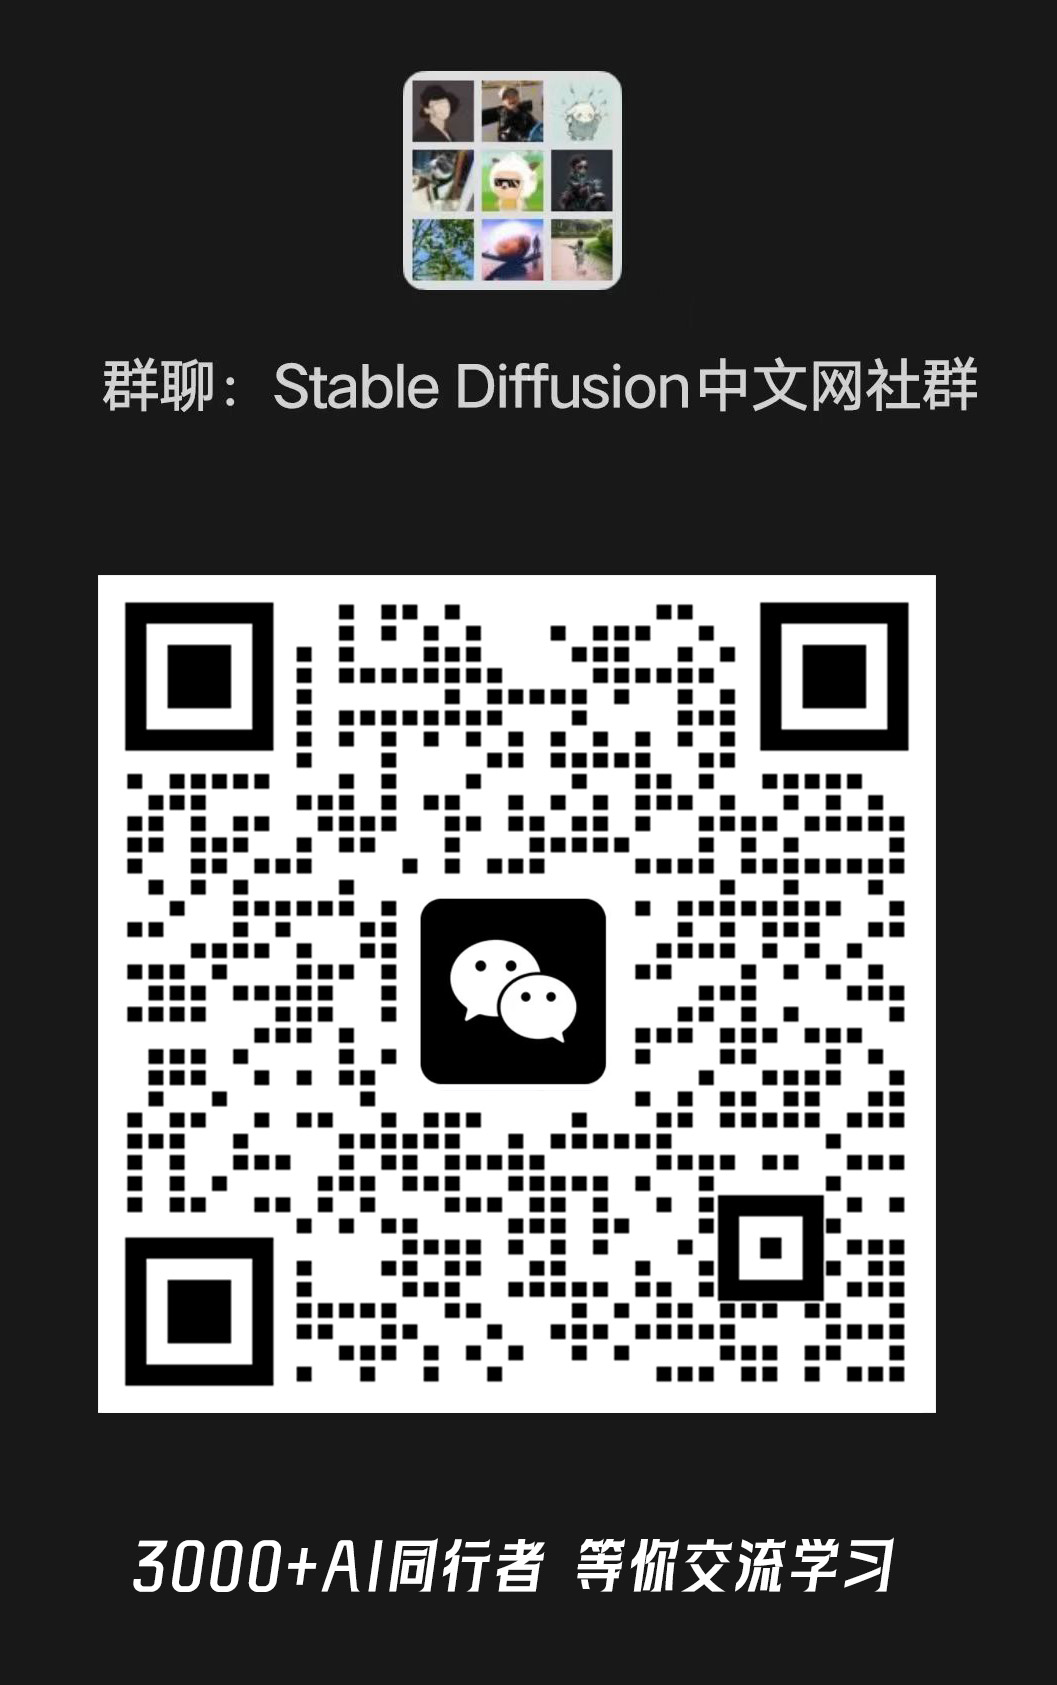 加入Stable Diffusion中文网交流群